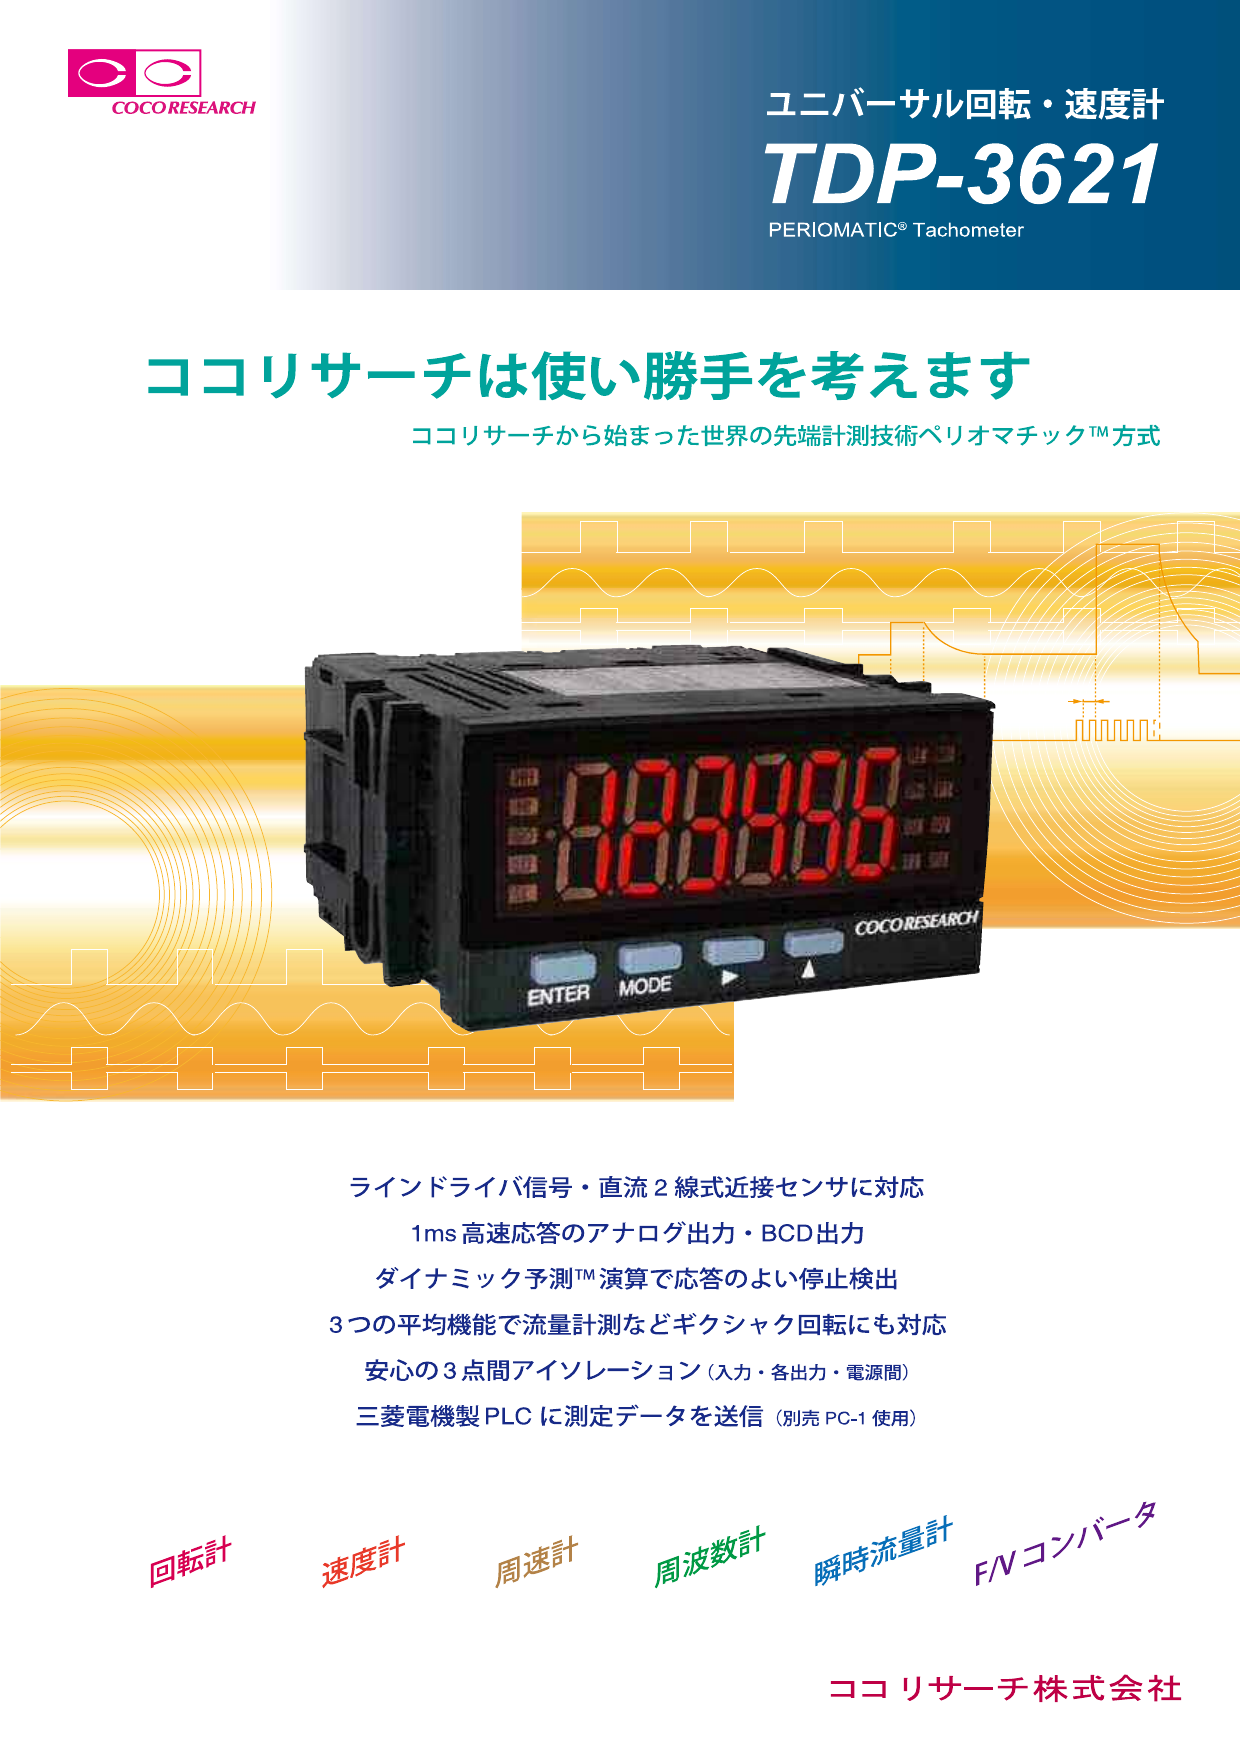 ココリサーチ ユニバーサル回転・速度計 TDP-3931-A10 - 工具、DIY用品